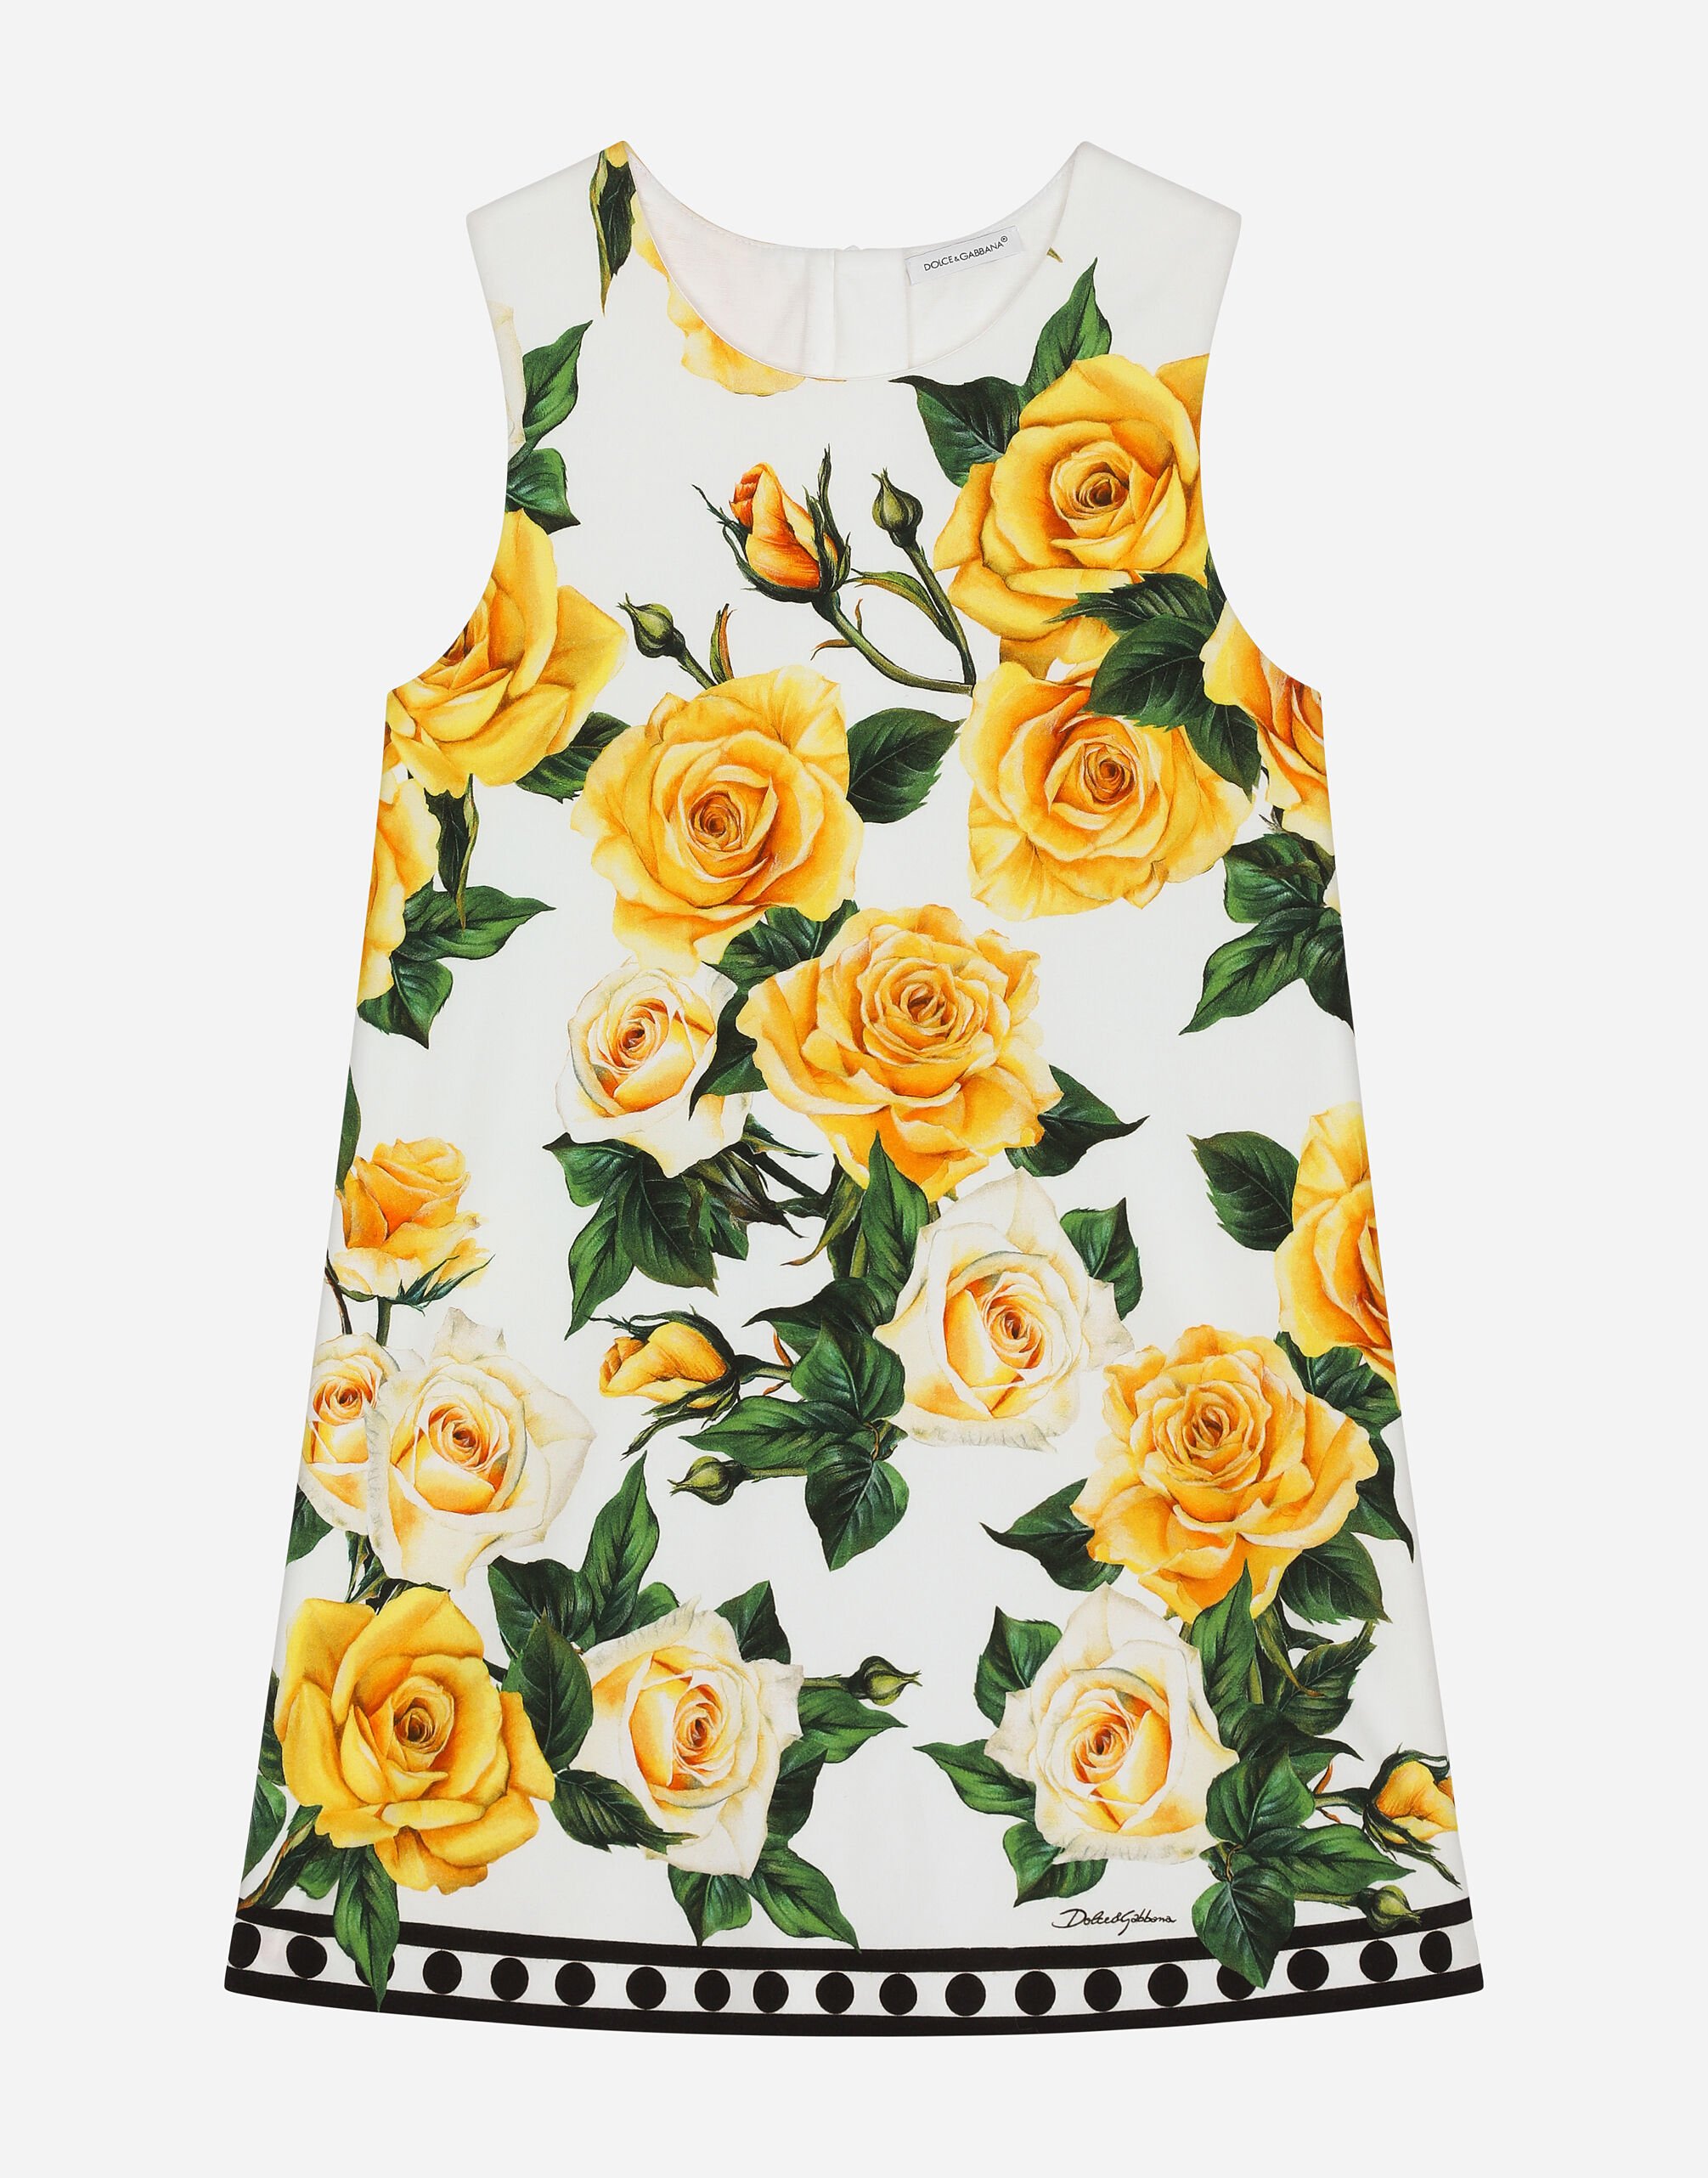 Dolce & Gabbana Kleid aus Interlock Print gelbe Rosen Drucken L53DI6HS5QR